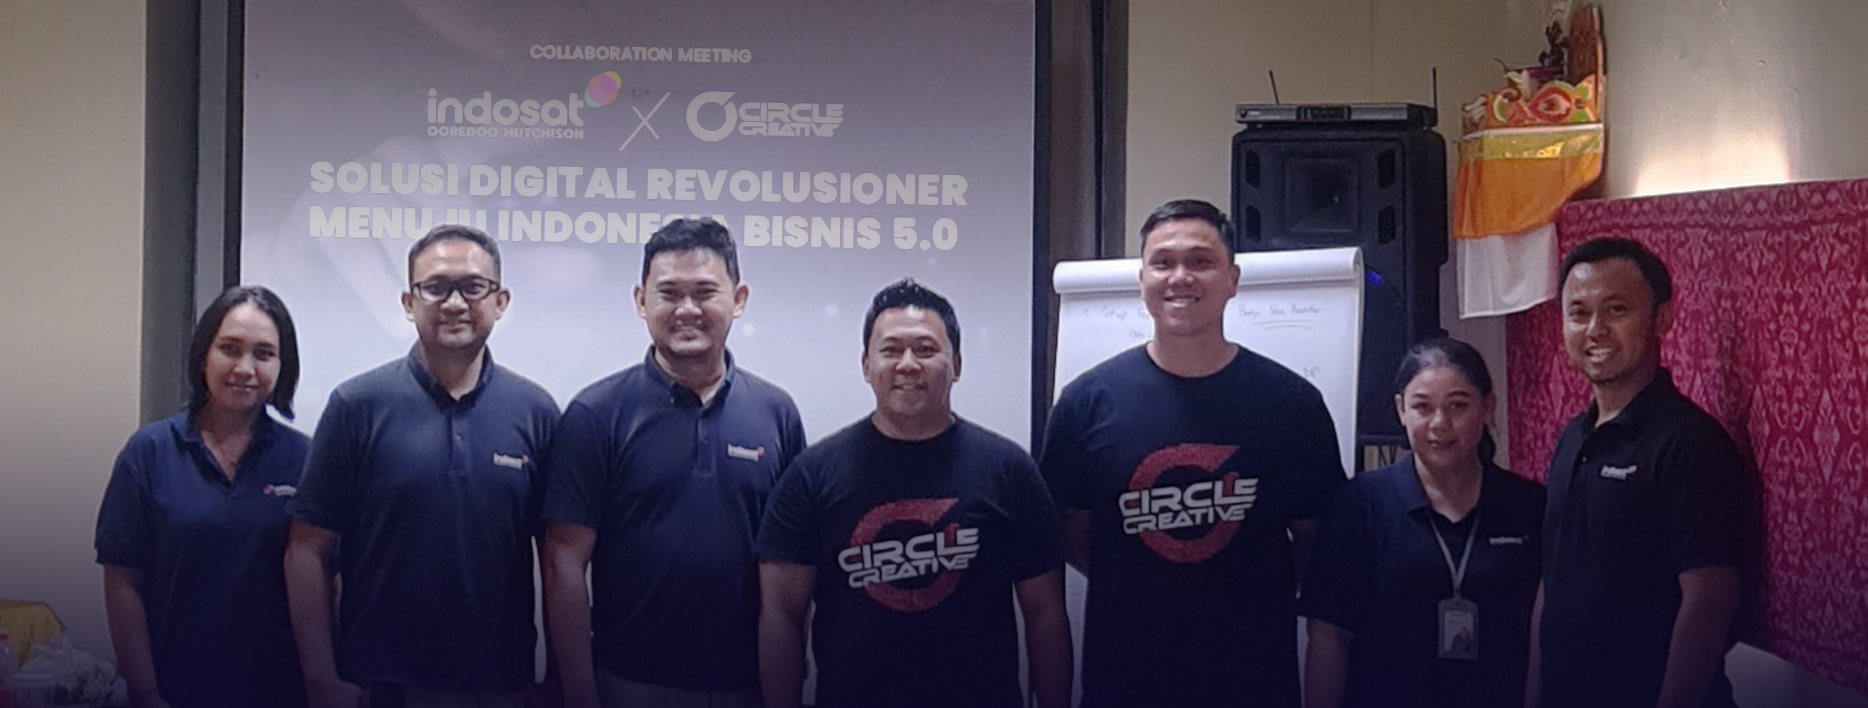 Indosat dan Circle Creative Berkolaborasi: Mengubah Permainan Bisnis dengan Teknologi Digital Mutakhir!